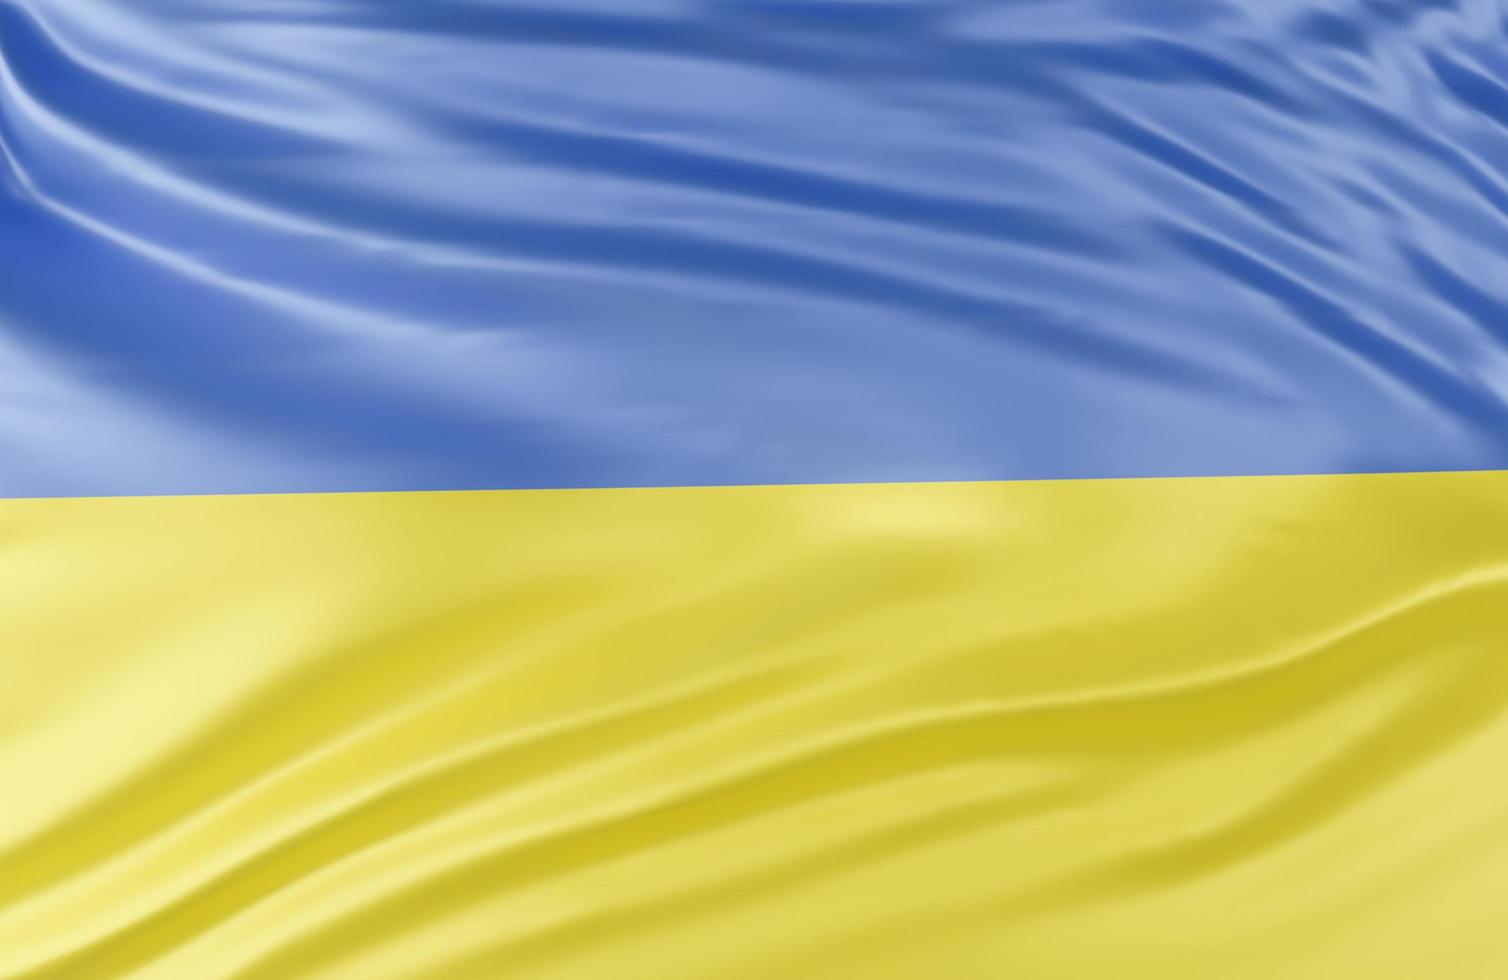 mooie Oekraïne vlag Golf close-up op banner achtergrond met kopie ruimte., 3D-model en illustratie. foto